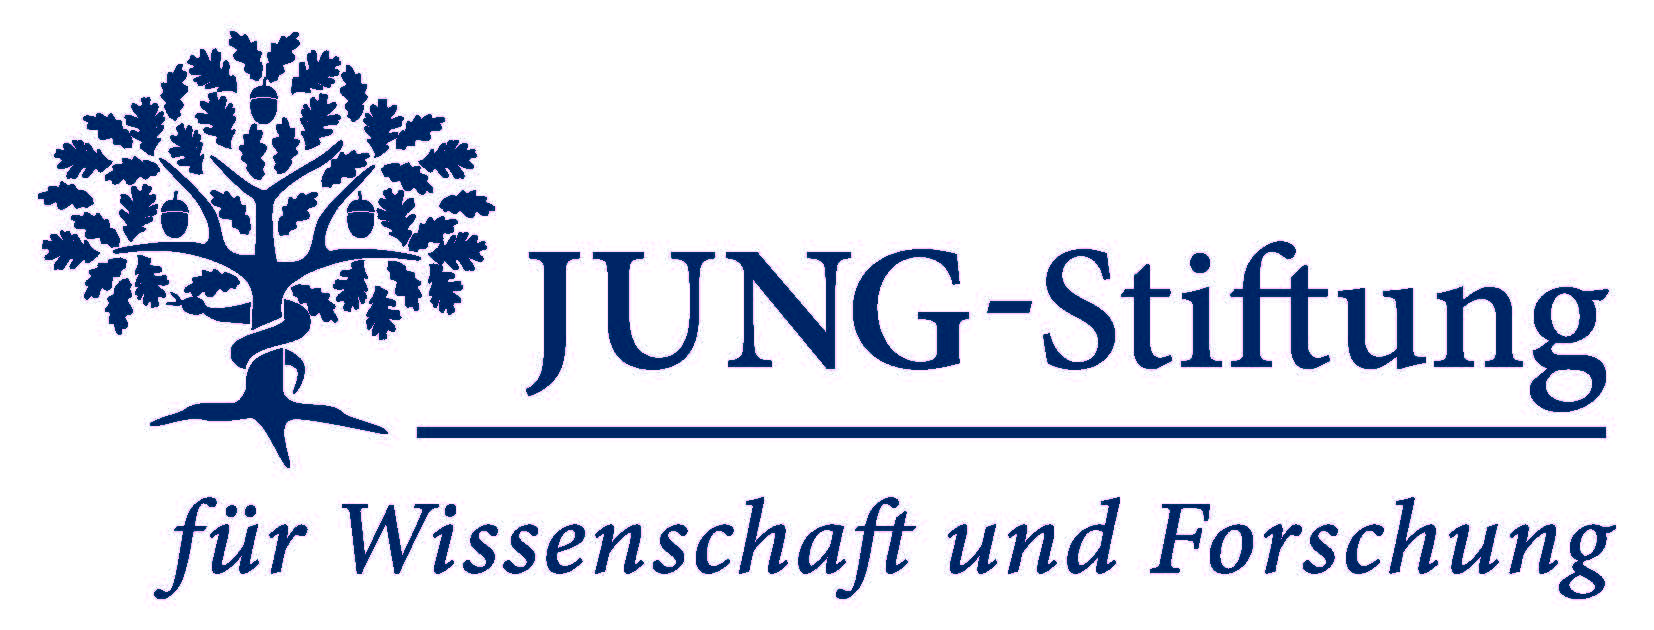 Logo Jung-Stiftung für Wissenschaft und Forschung